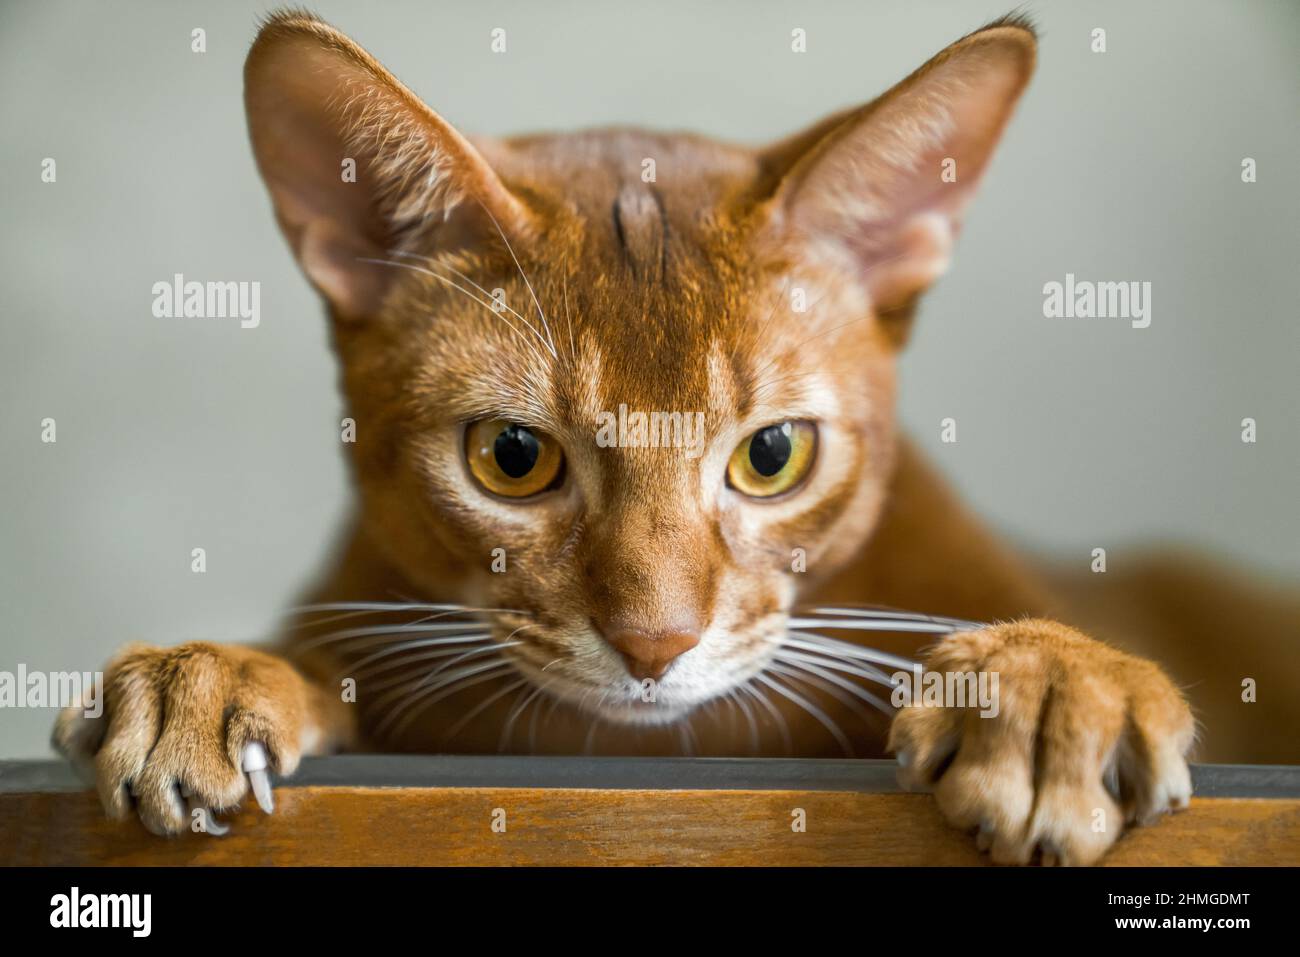 Le chat rouge de race abyssinienne repose sur une chaise et regarde la caméra, le museau et les pattes de près Banque D'Images